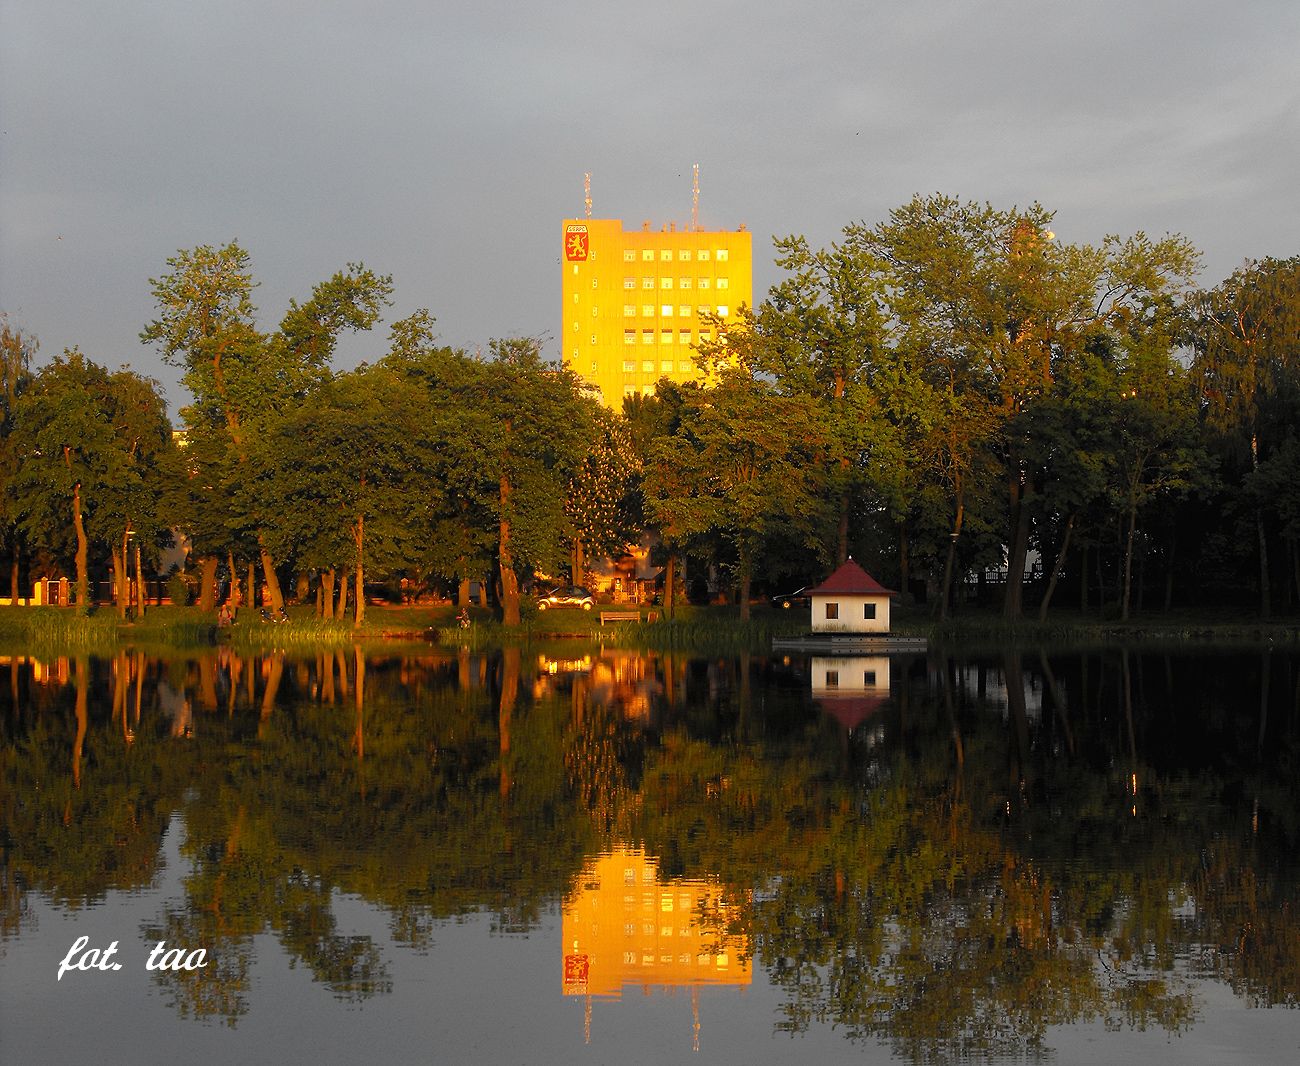 Wieczorny spacer w parku Jeziórka. Na zdjęciu symbol parku - domek na wodzie, ale i budynek słodowni też może być romantyczny, 19.05.2014 r.